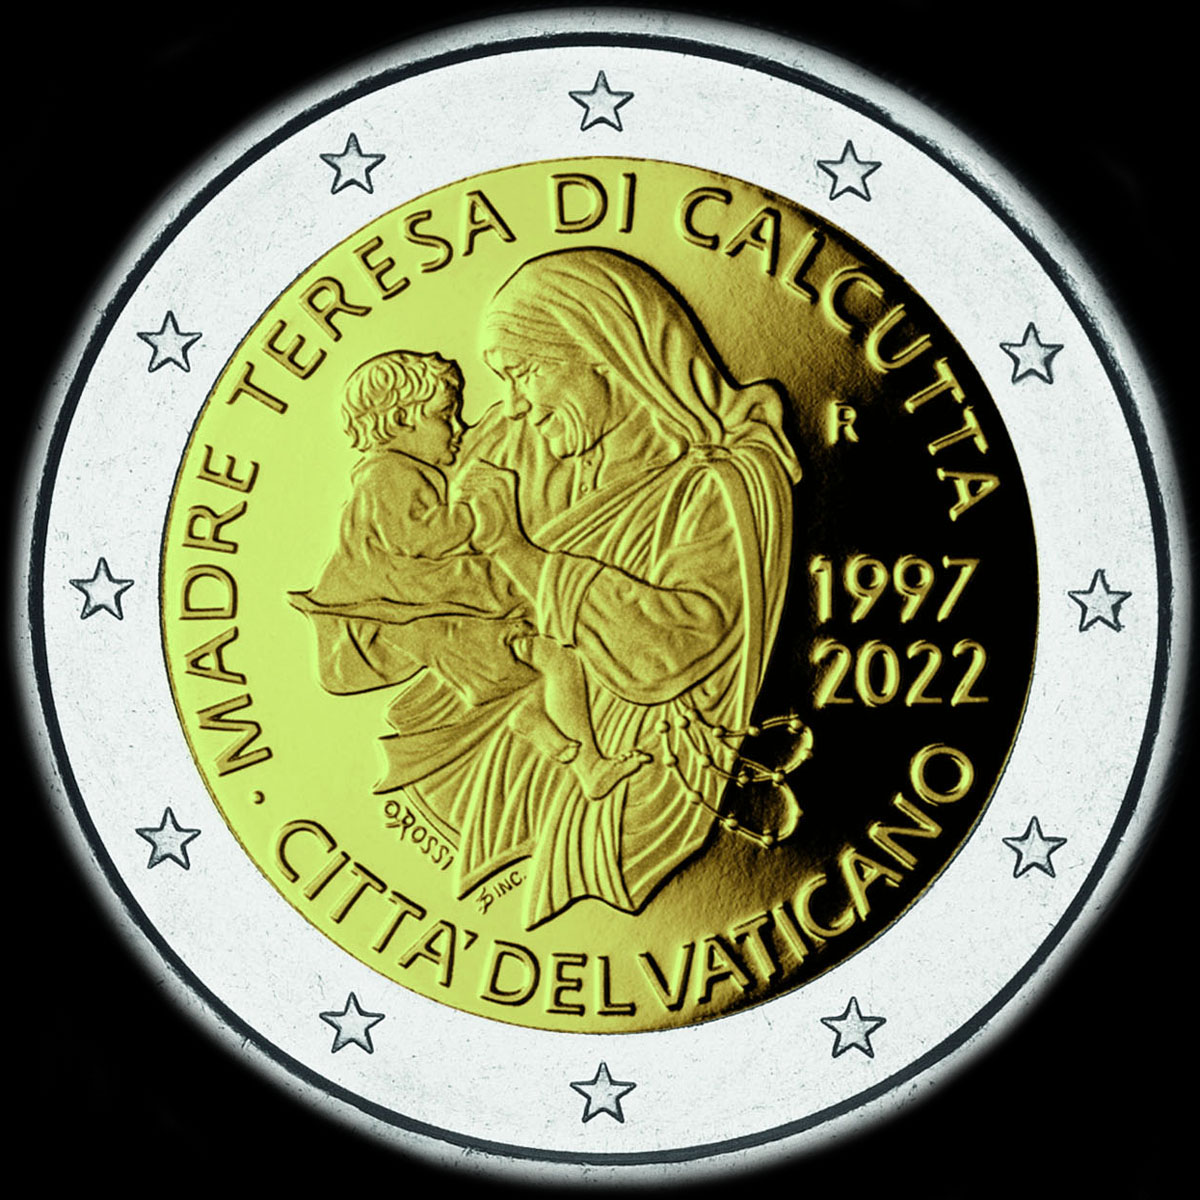 Vatican 2022 - 25 ans de la mort de Mre Teresa - 2 euro commmorative